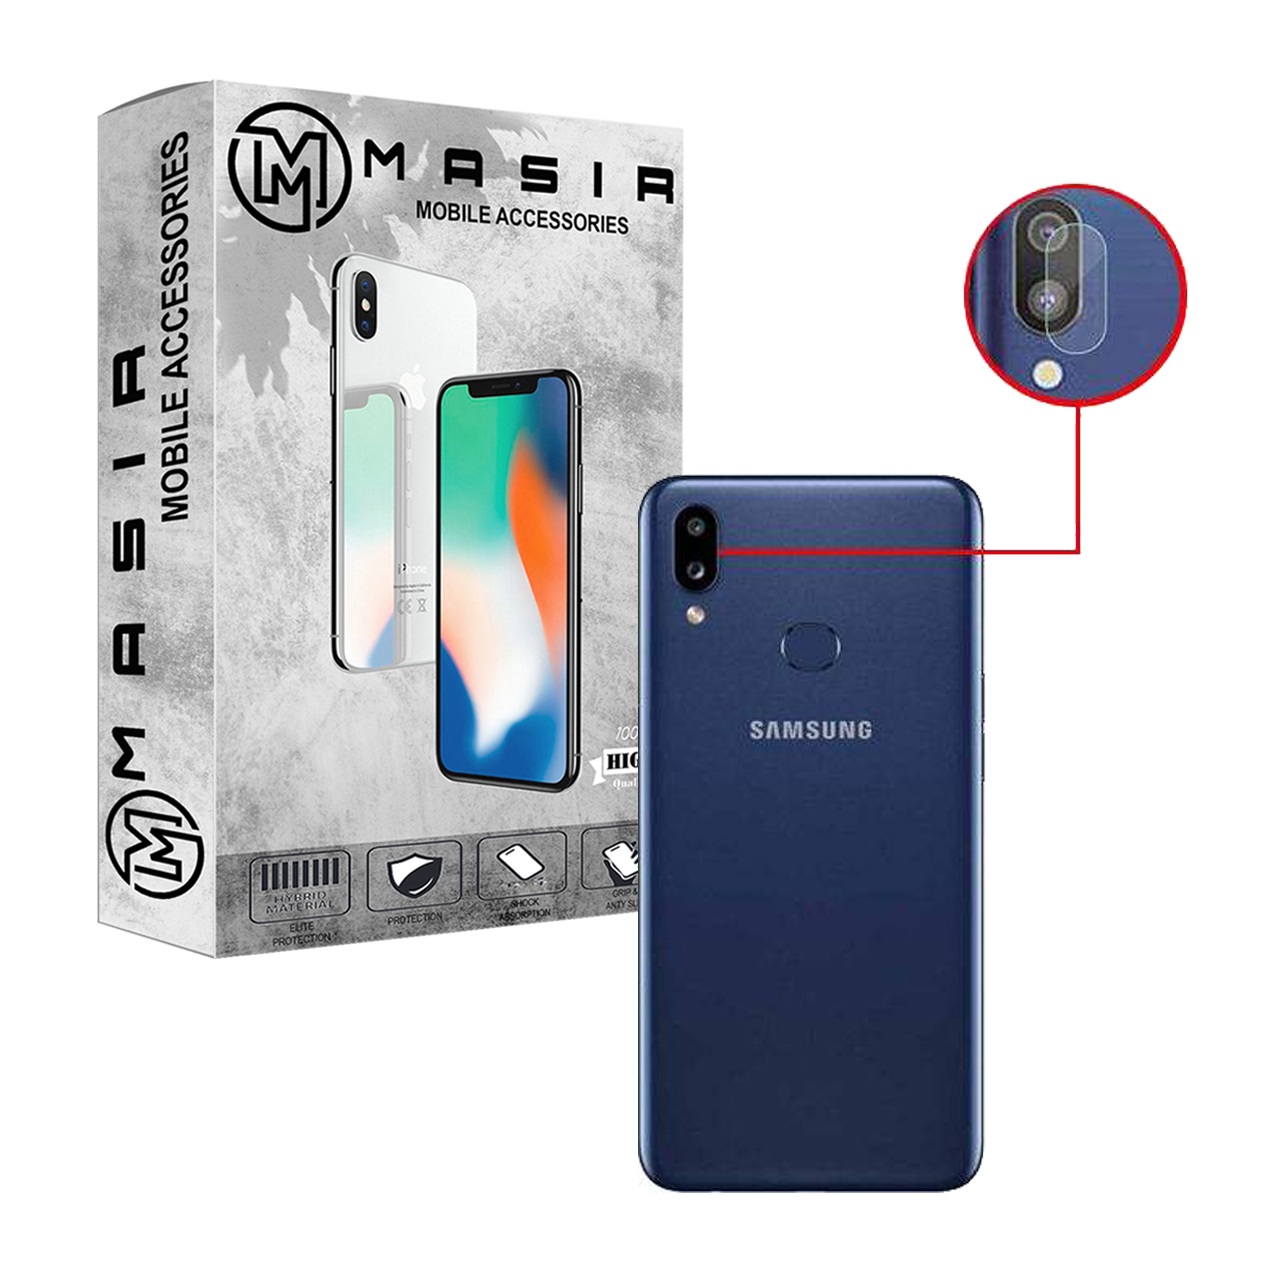 کاور مسیر مدل MAGBEL مناسب برای گوشی موبایل سامسونگ Galaxy A10s به همراه محافظ صفحه نمایش و محافظ لنز دوربین